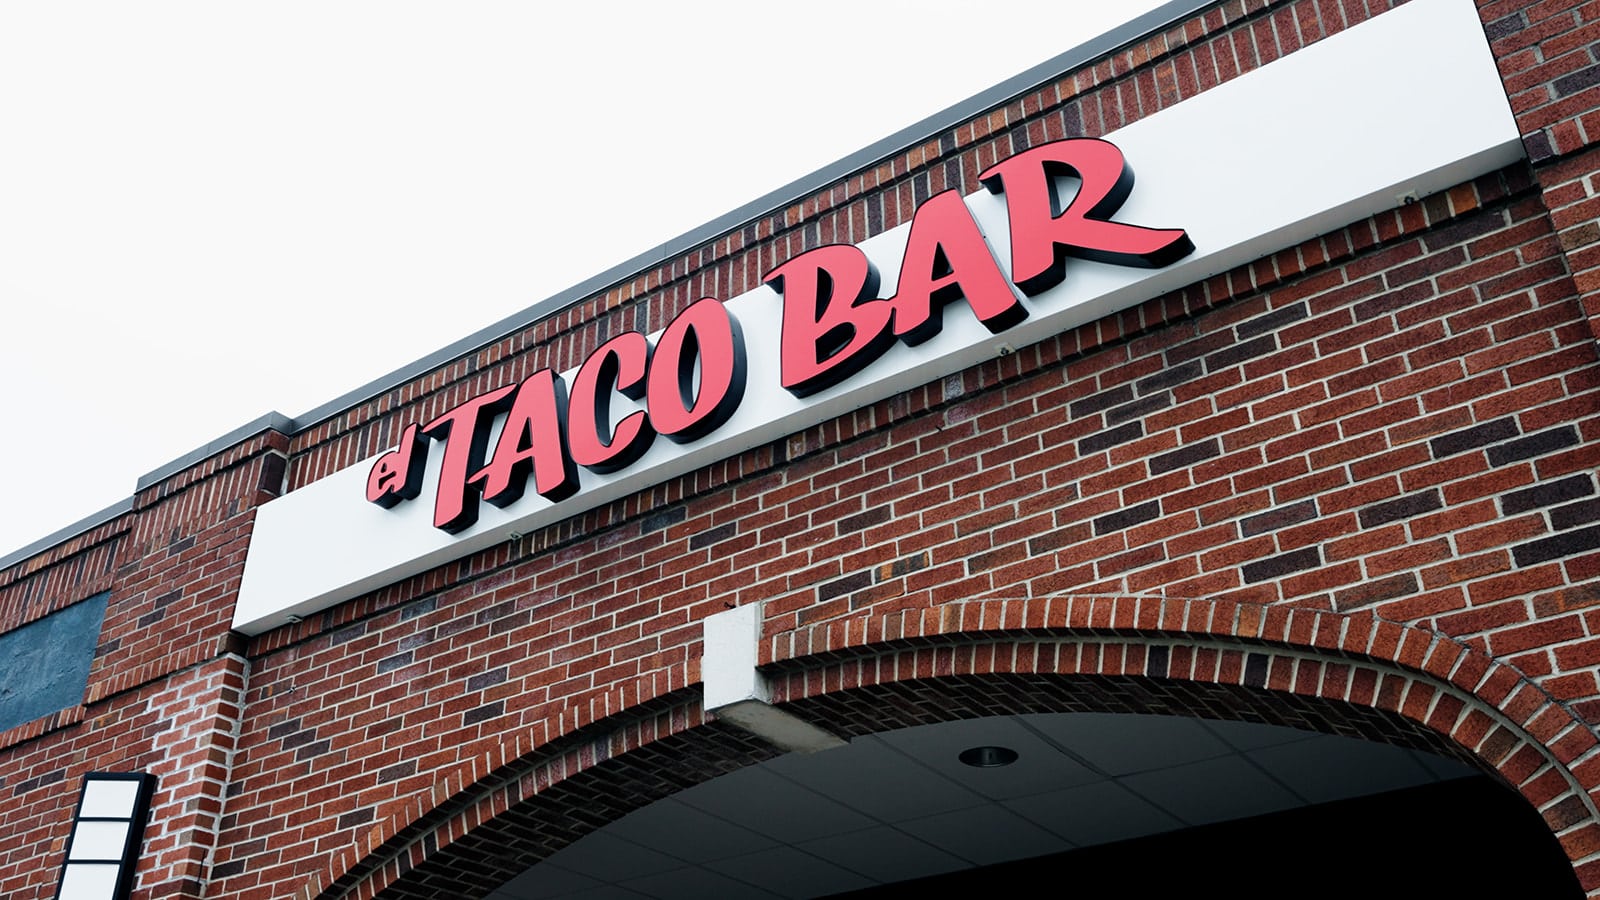 El Taco Bar Fast Food Restaurant Construction